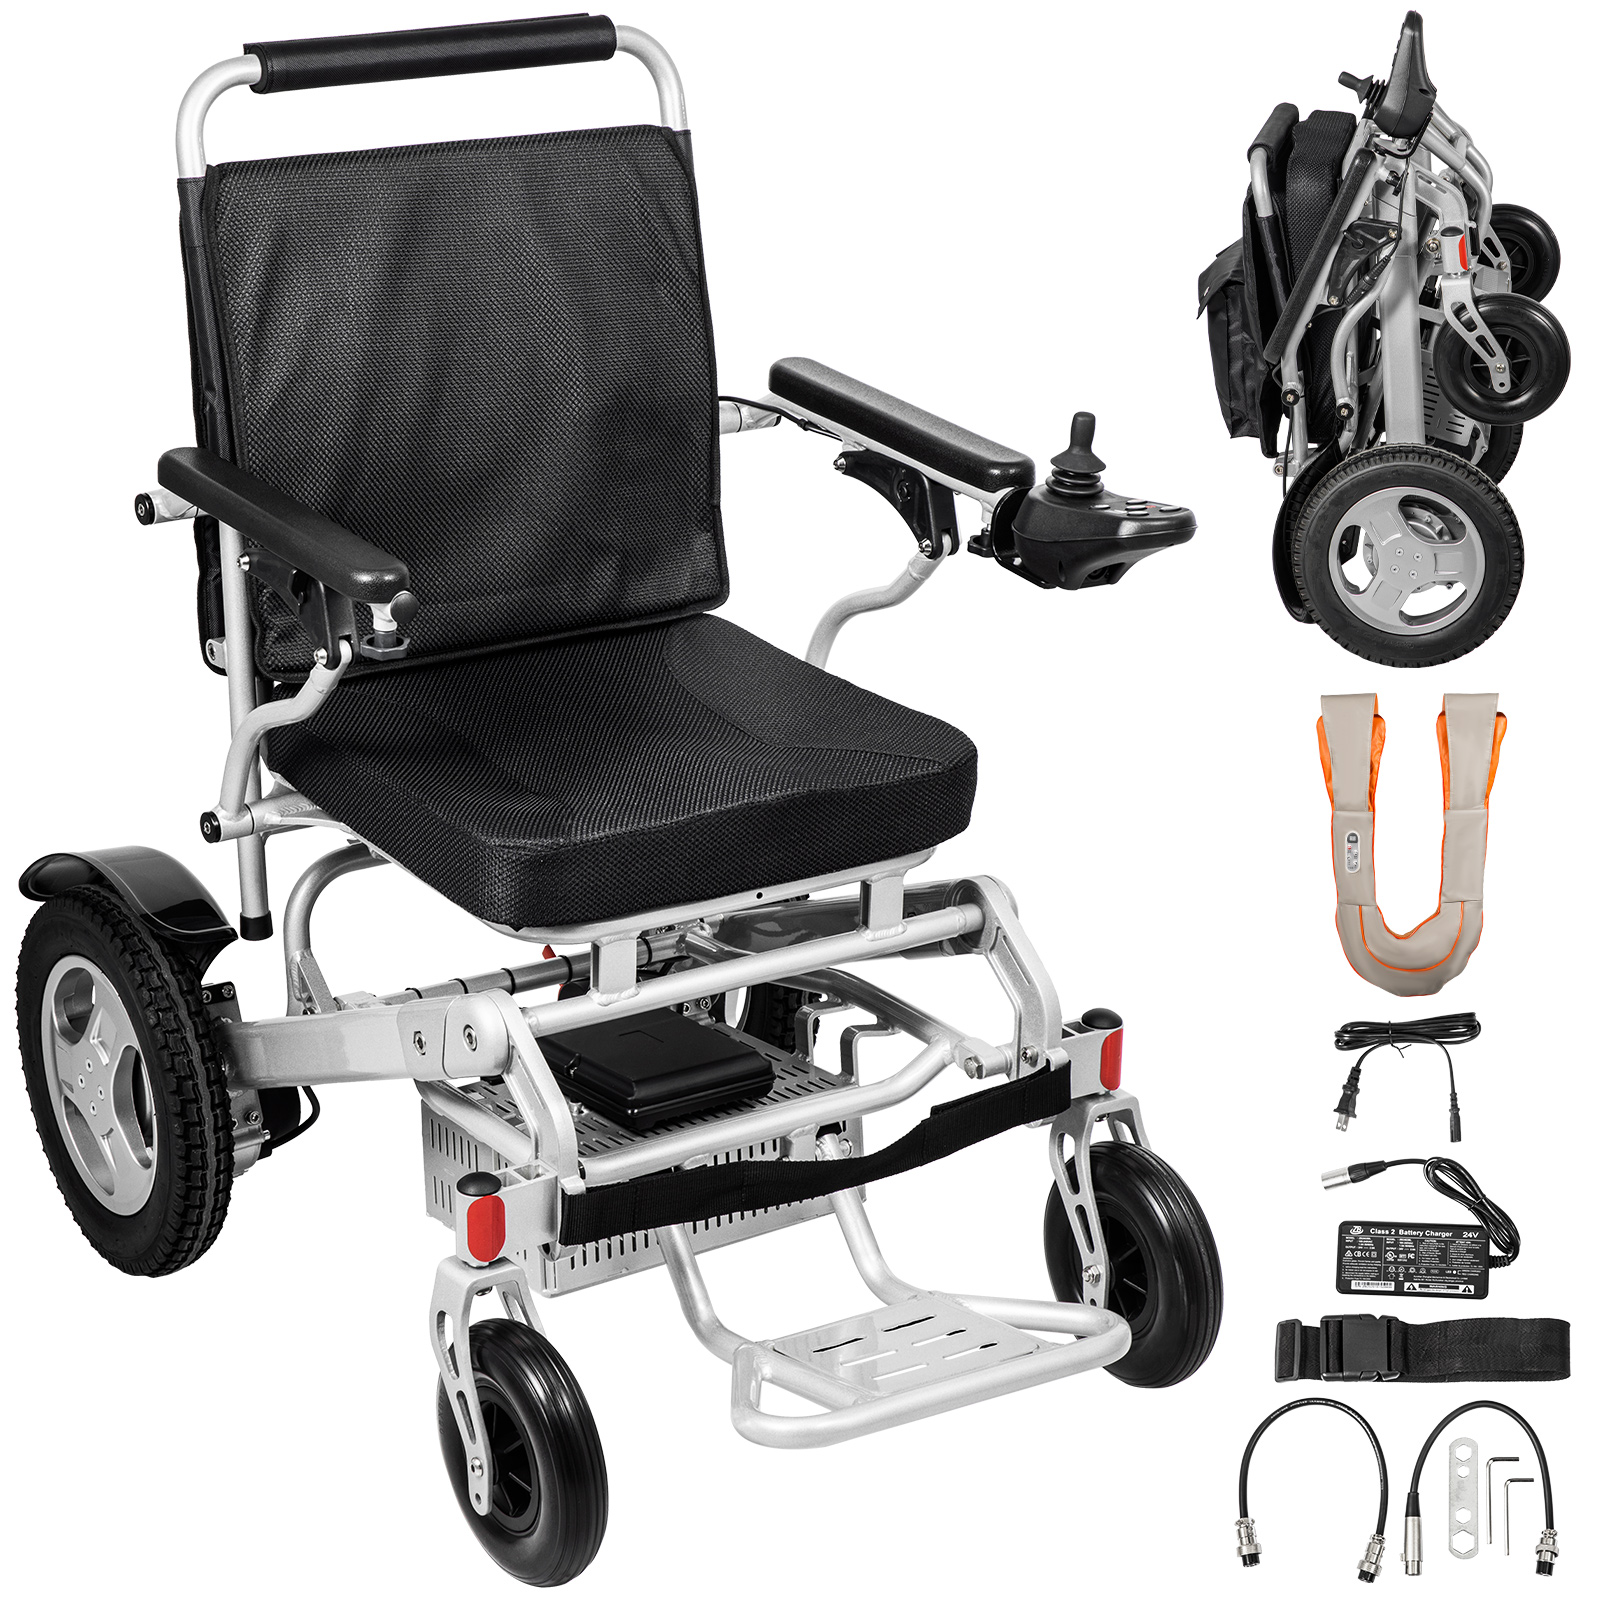 Verrijken Vergelding Perfect Elektrische rolstoel trap klimmer, elektrische opvouwbare rolstoel,  zilverachtig | VEVOR NL